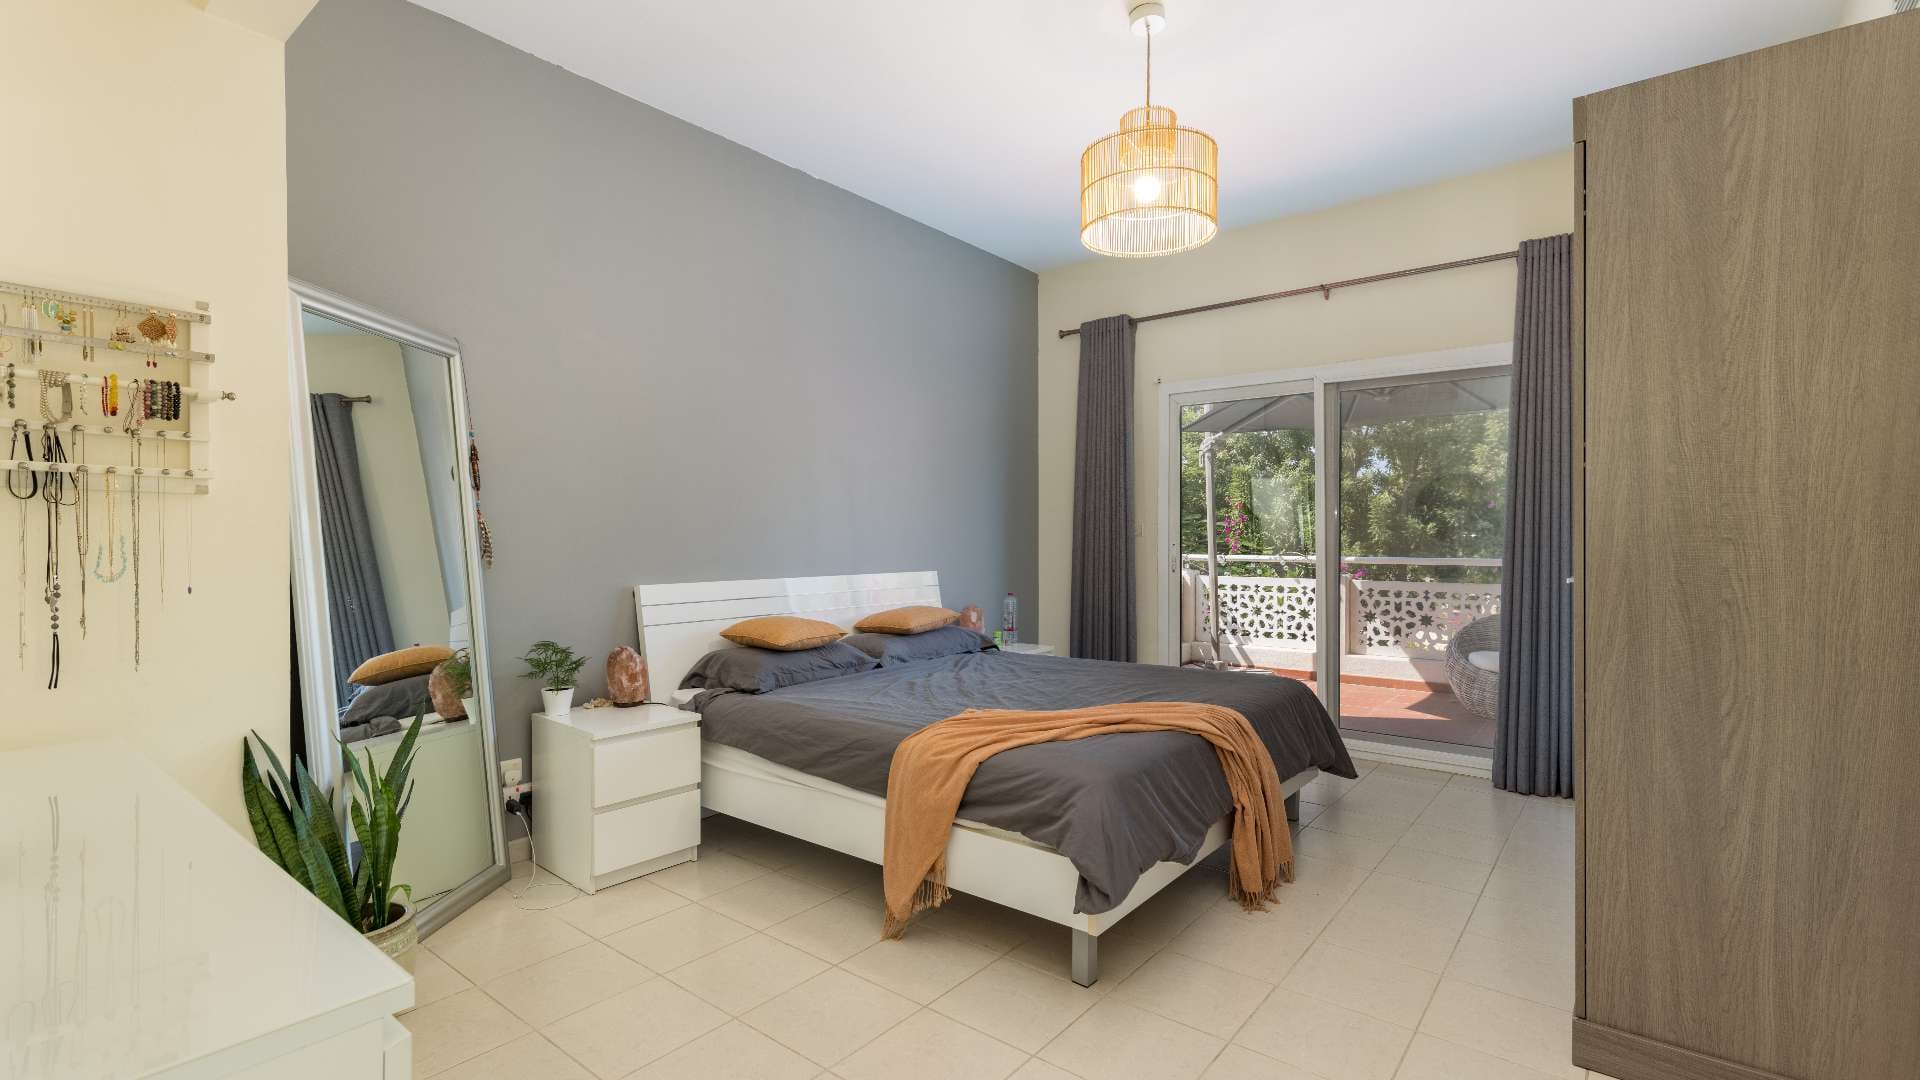 3 Bedroom Villa For Sale Meadows Lp09065 12a6aef931177f00.jpg